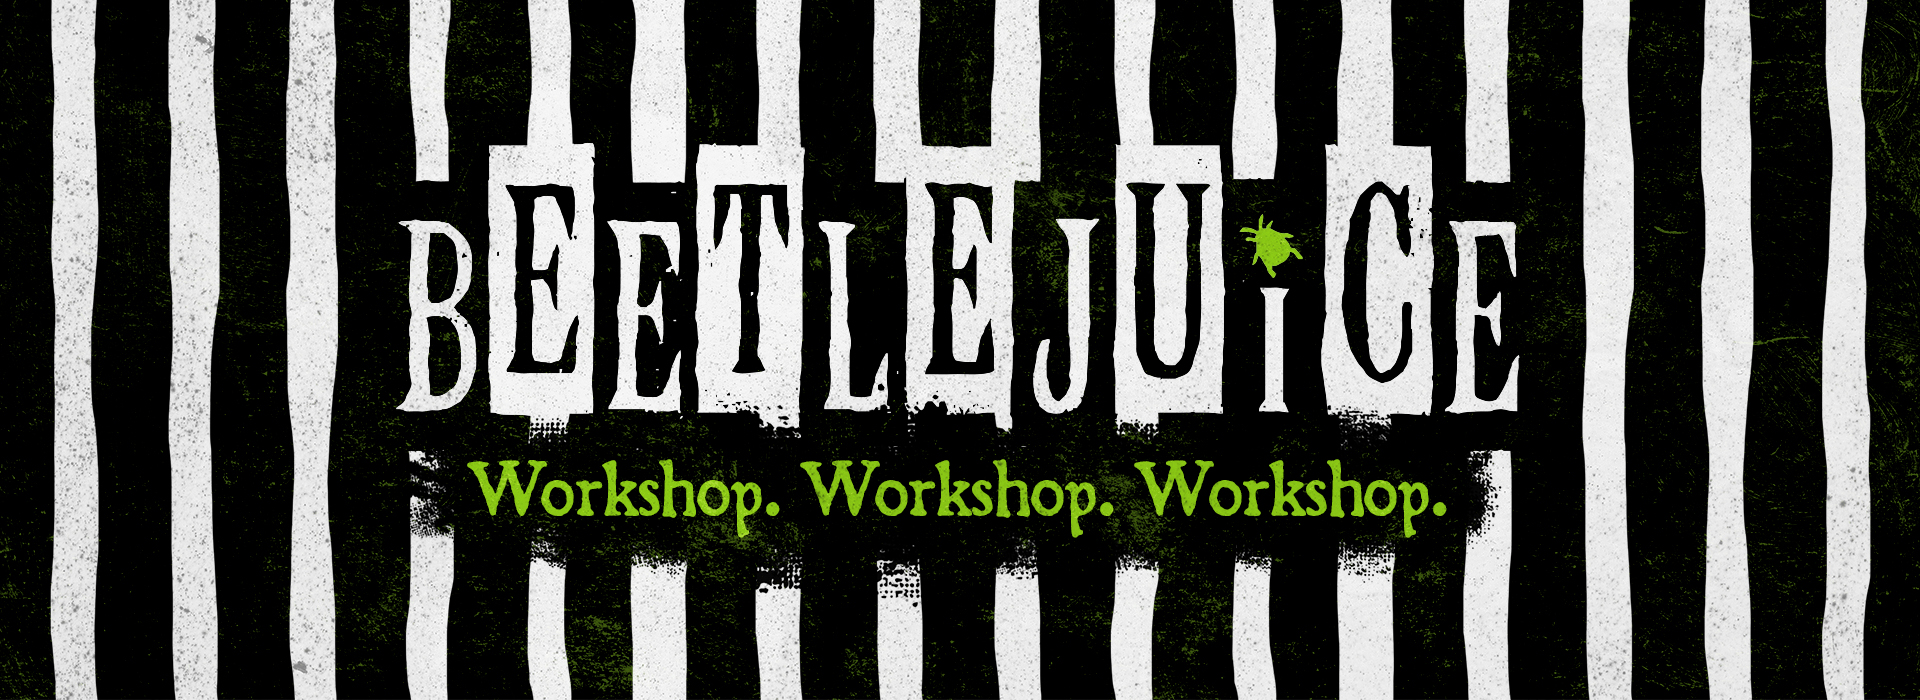 Beetlejuice_Full Design_Web Banner